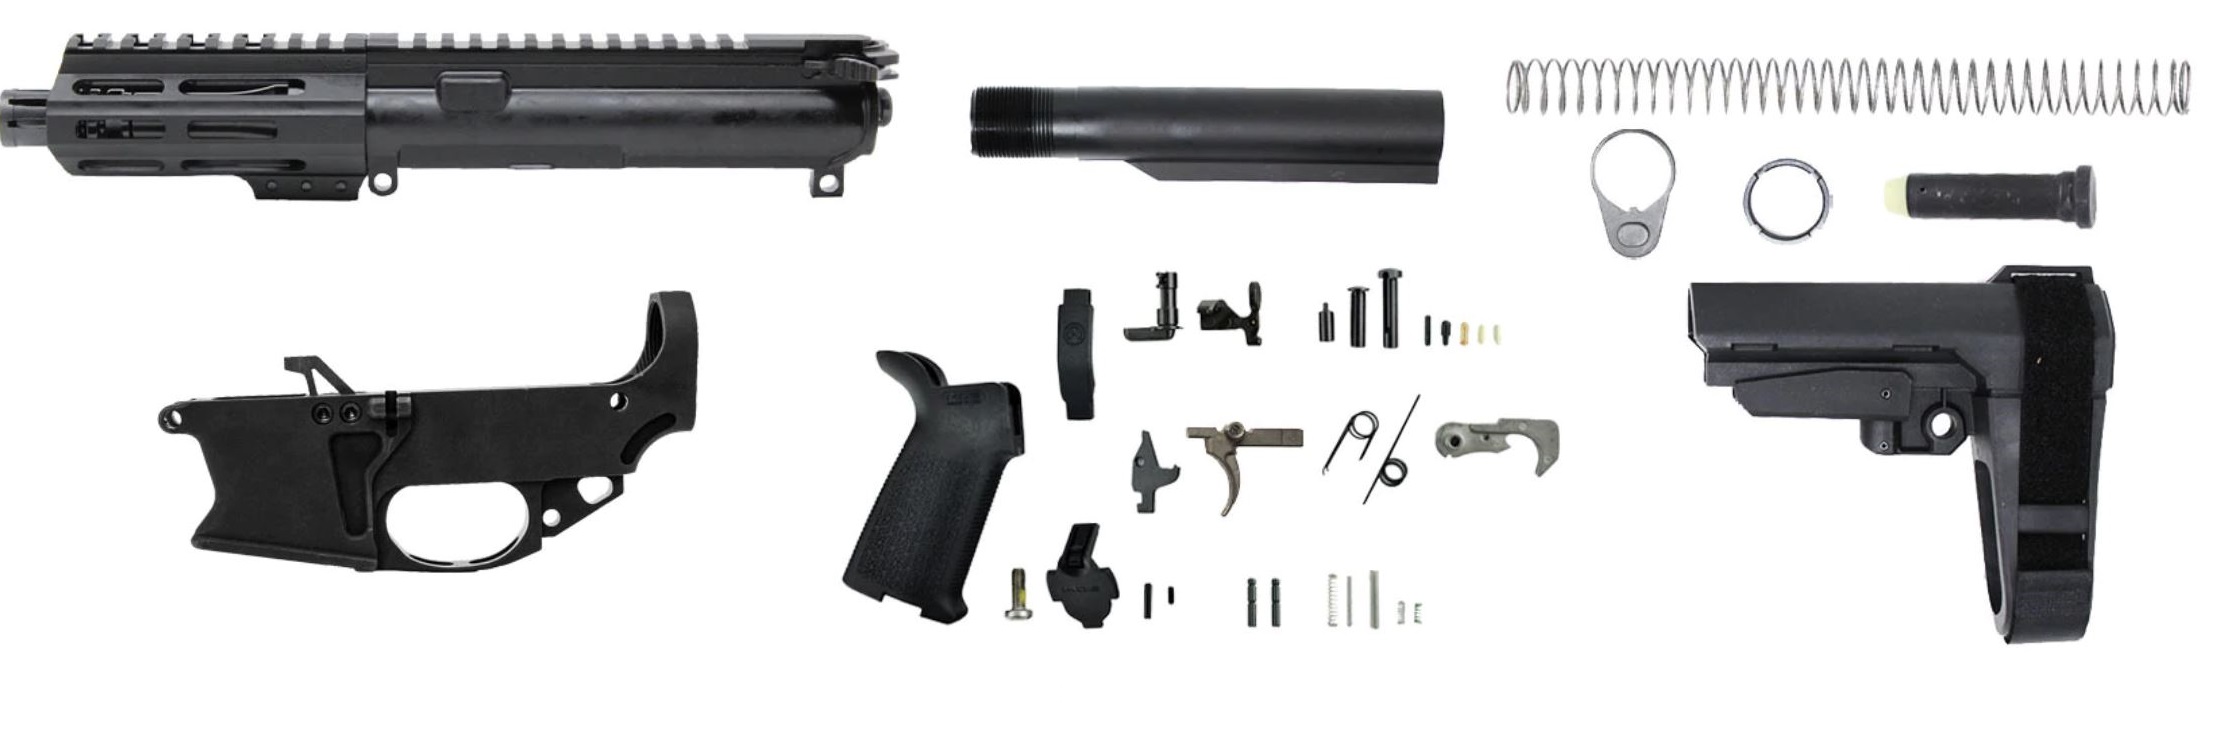 9mm AR Pistol Kit. 